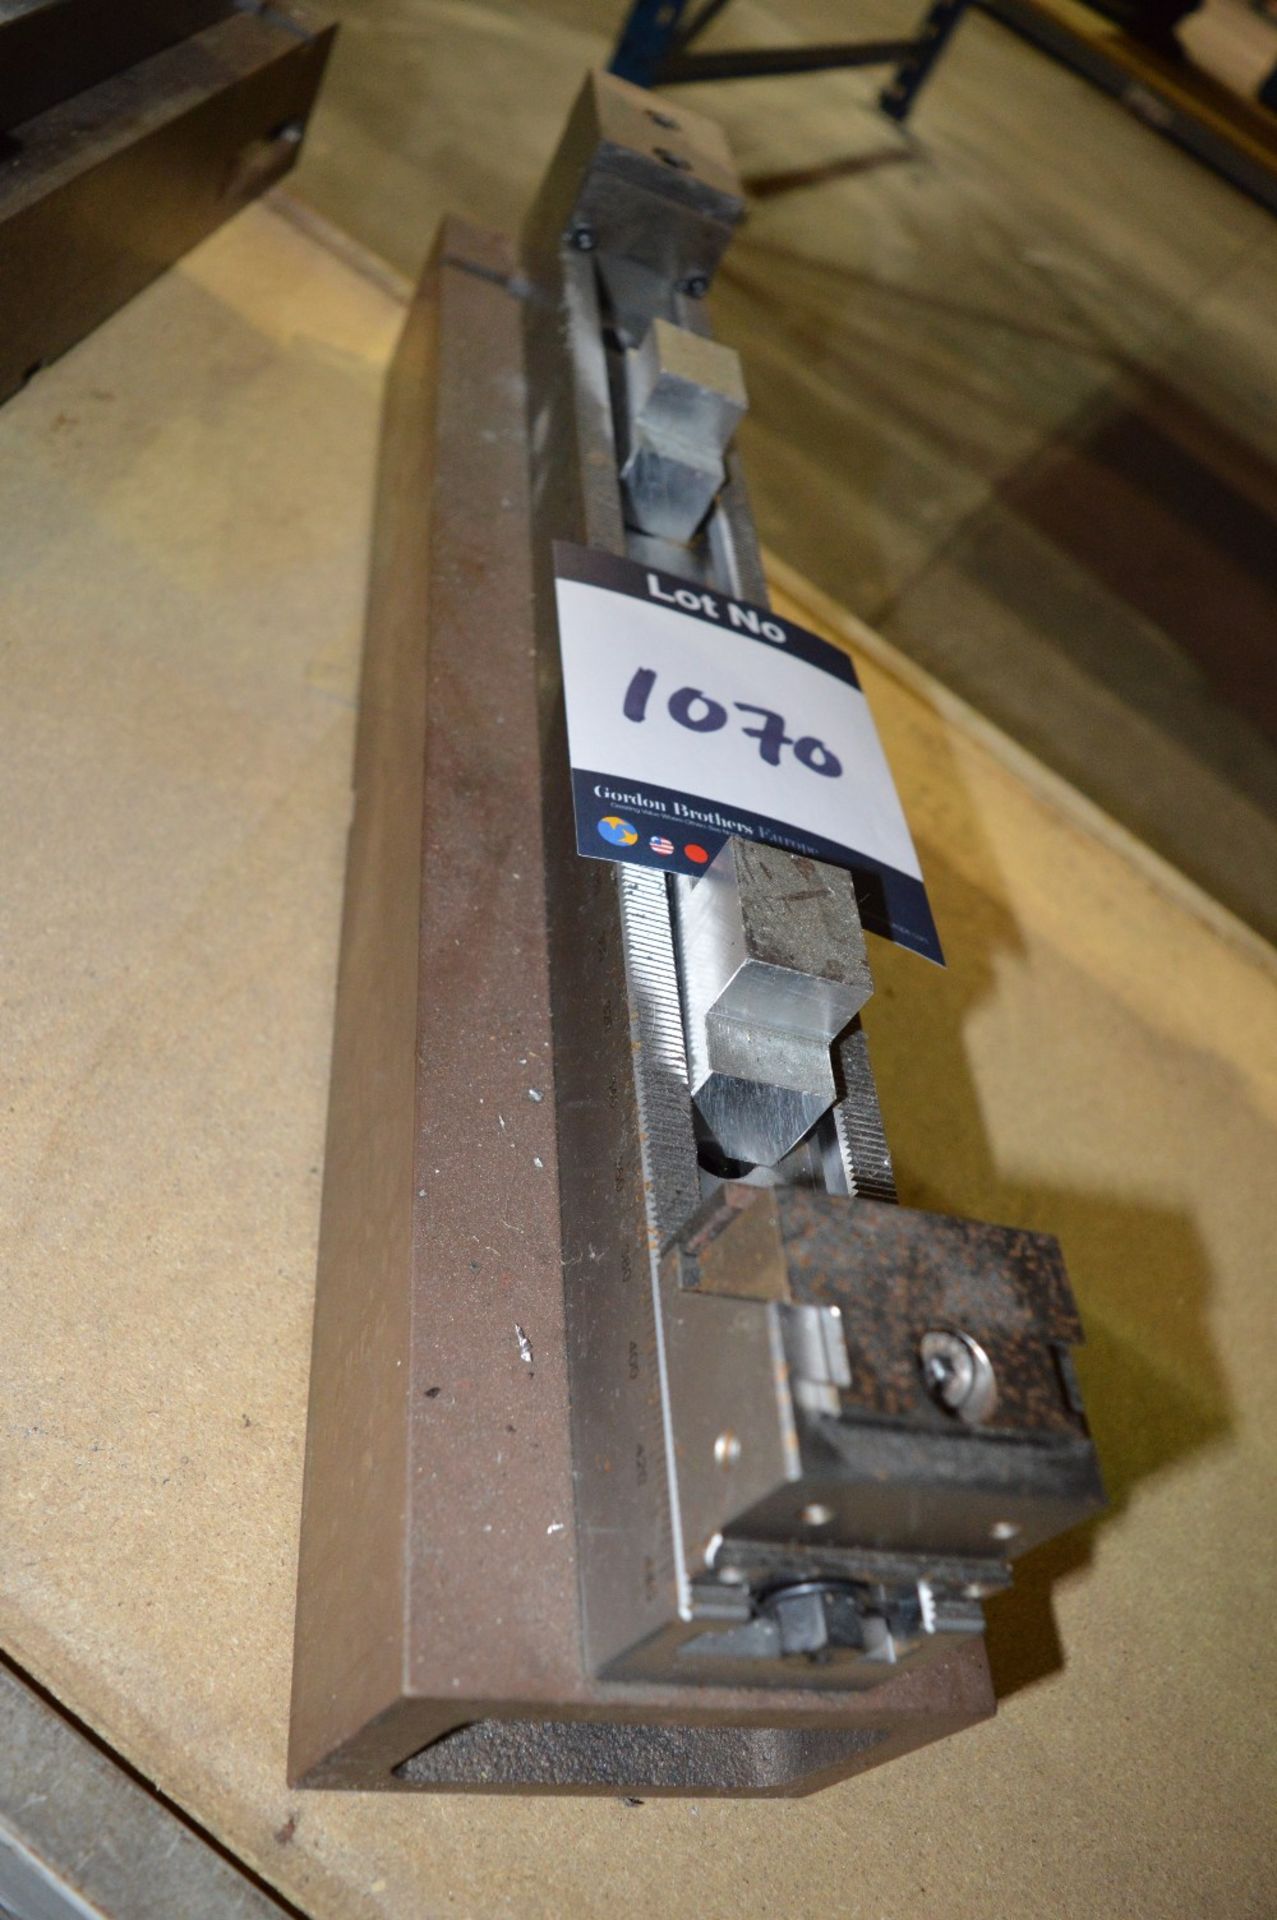 Chofer, 9.3481.0650, 440mm Machine Vice
Serial Num